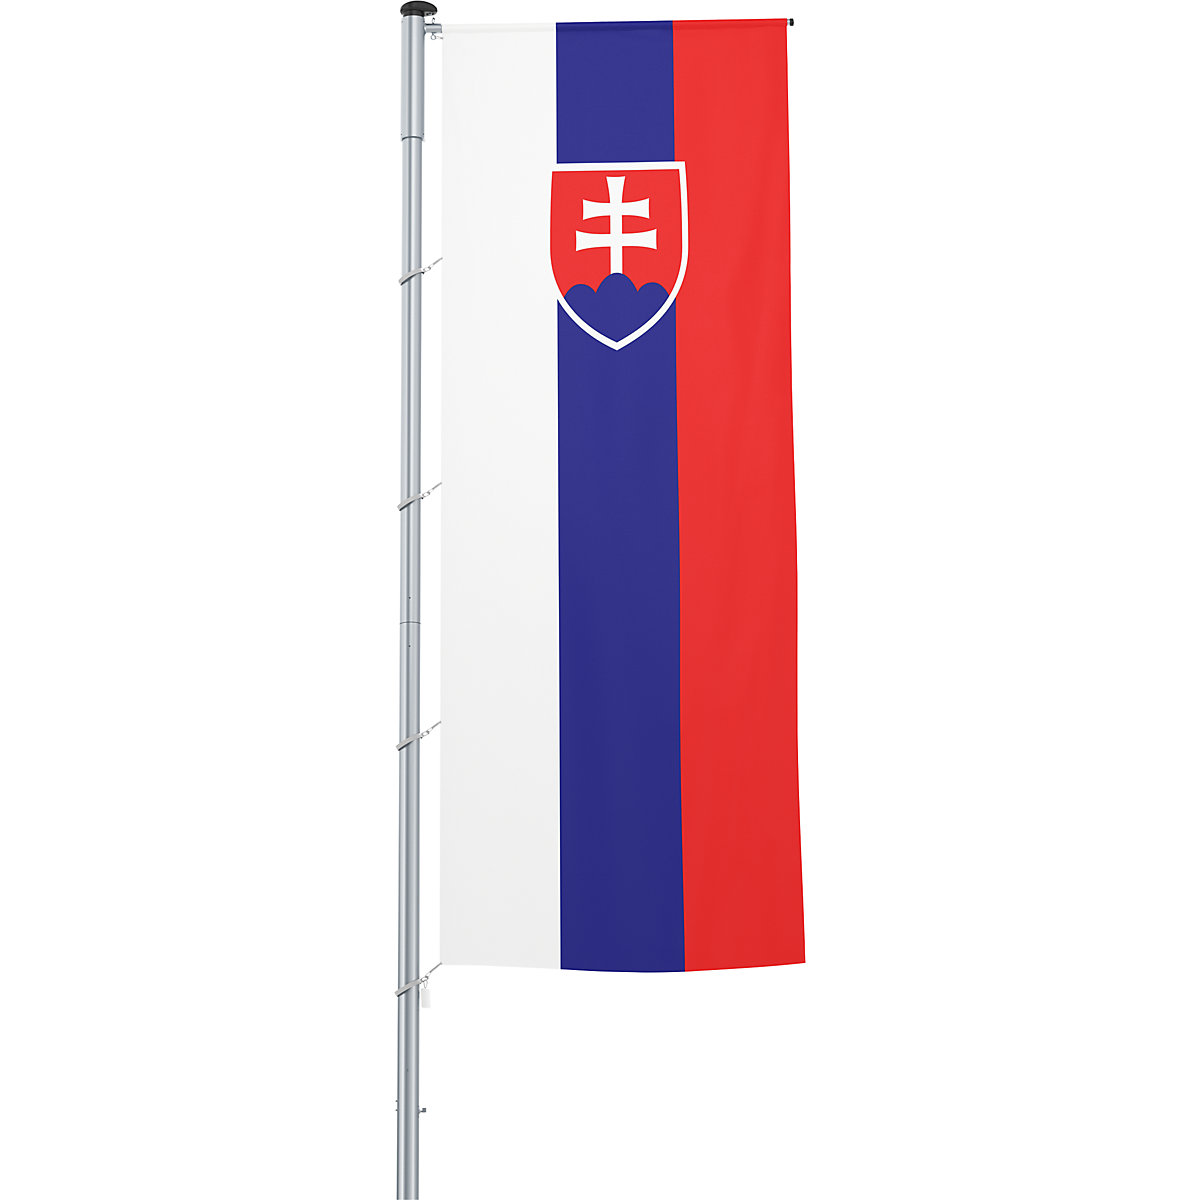 Mannus – Bandera con pluma/bandera del país, formato 1,2 x 3 m, Eslovaquia